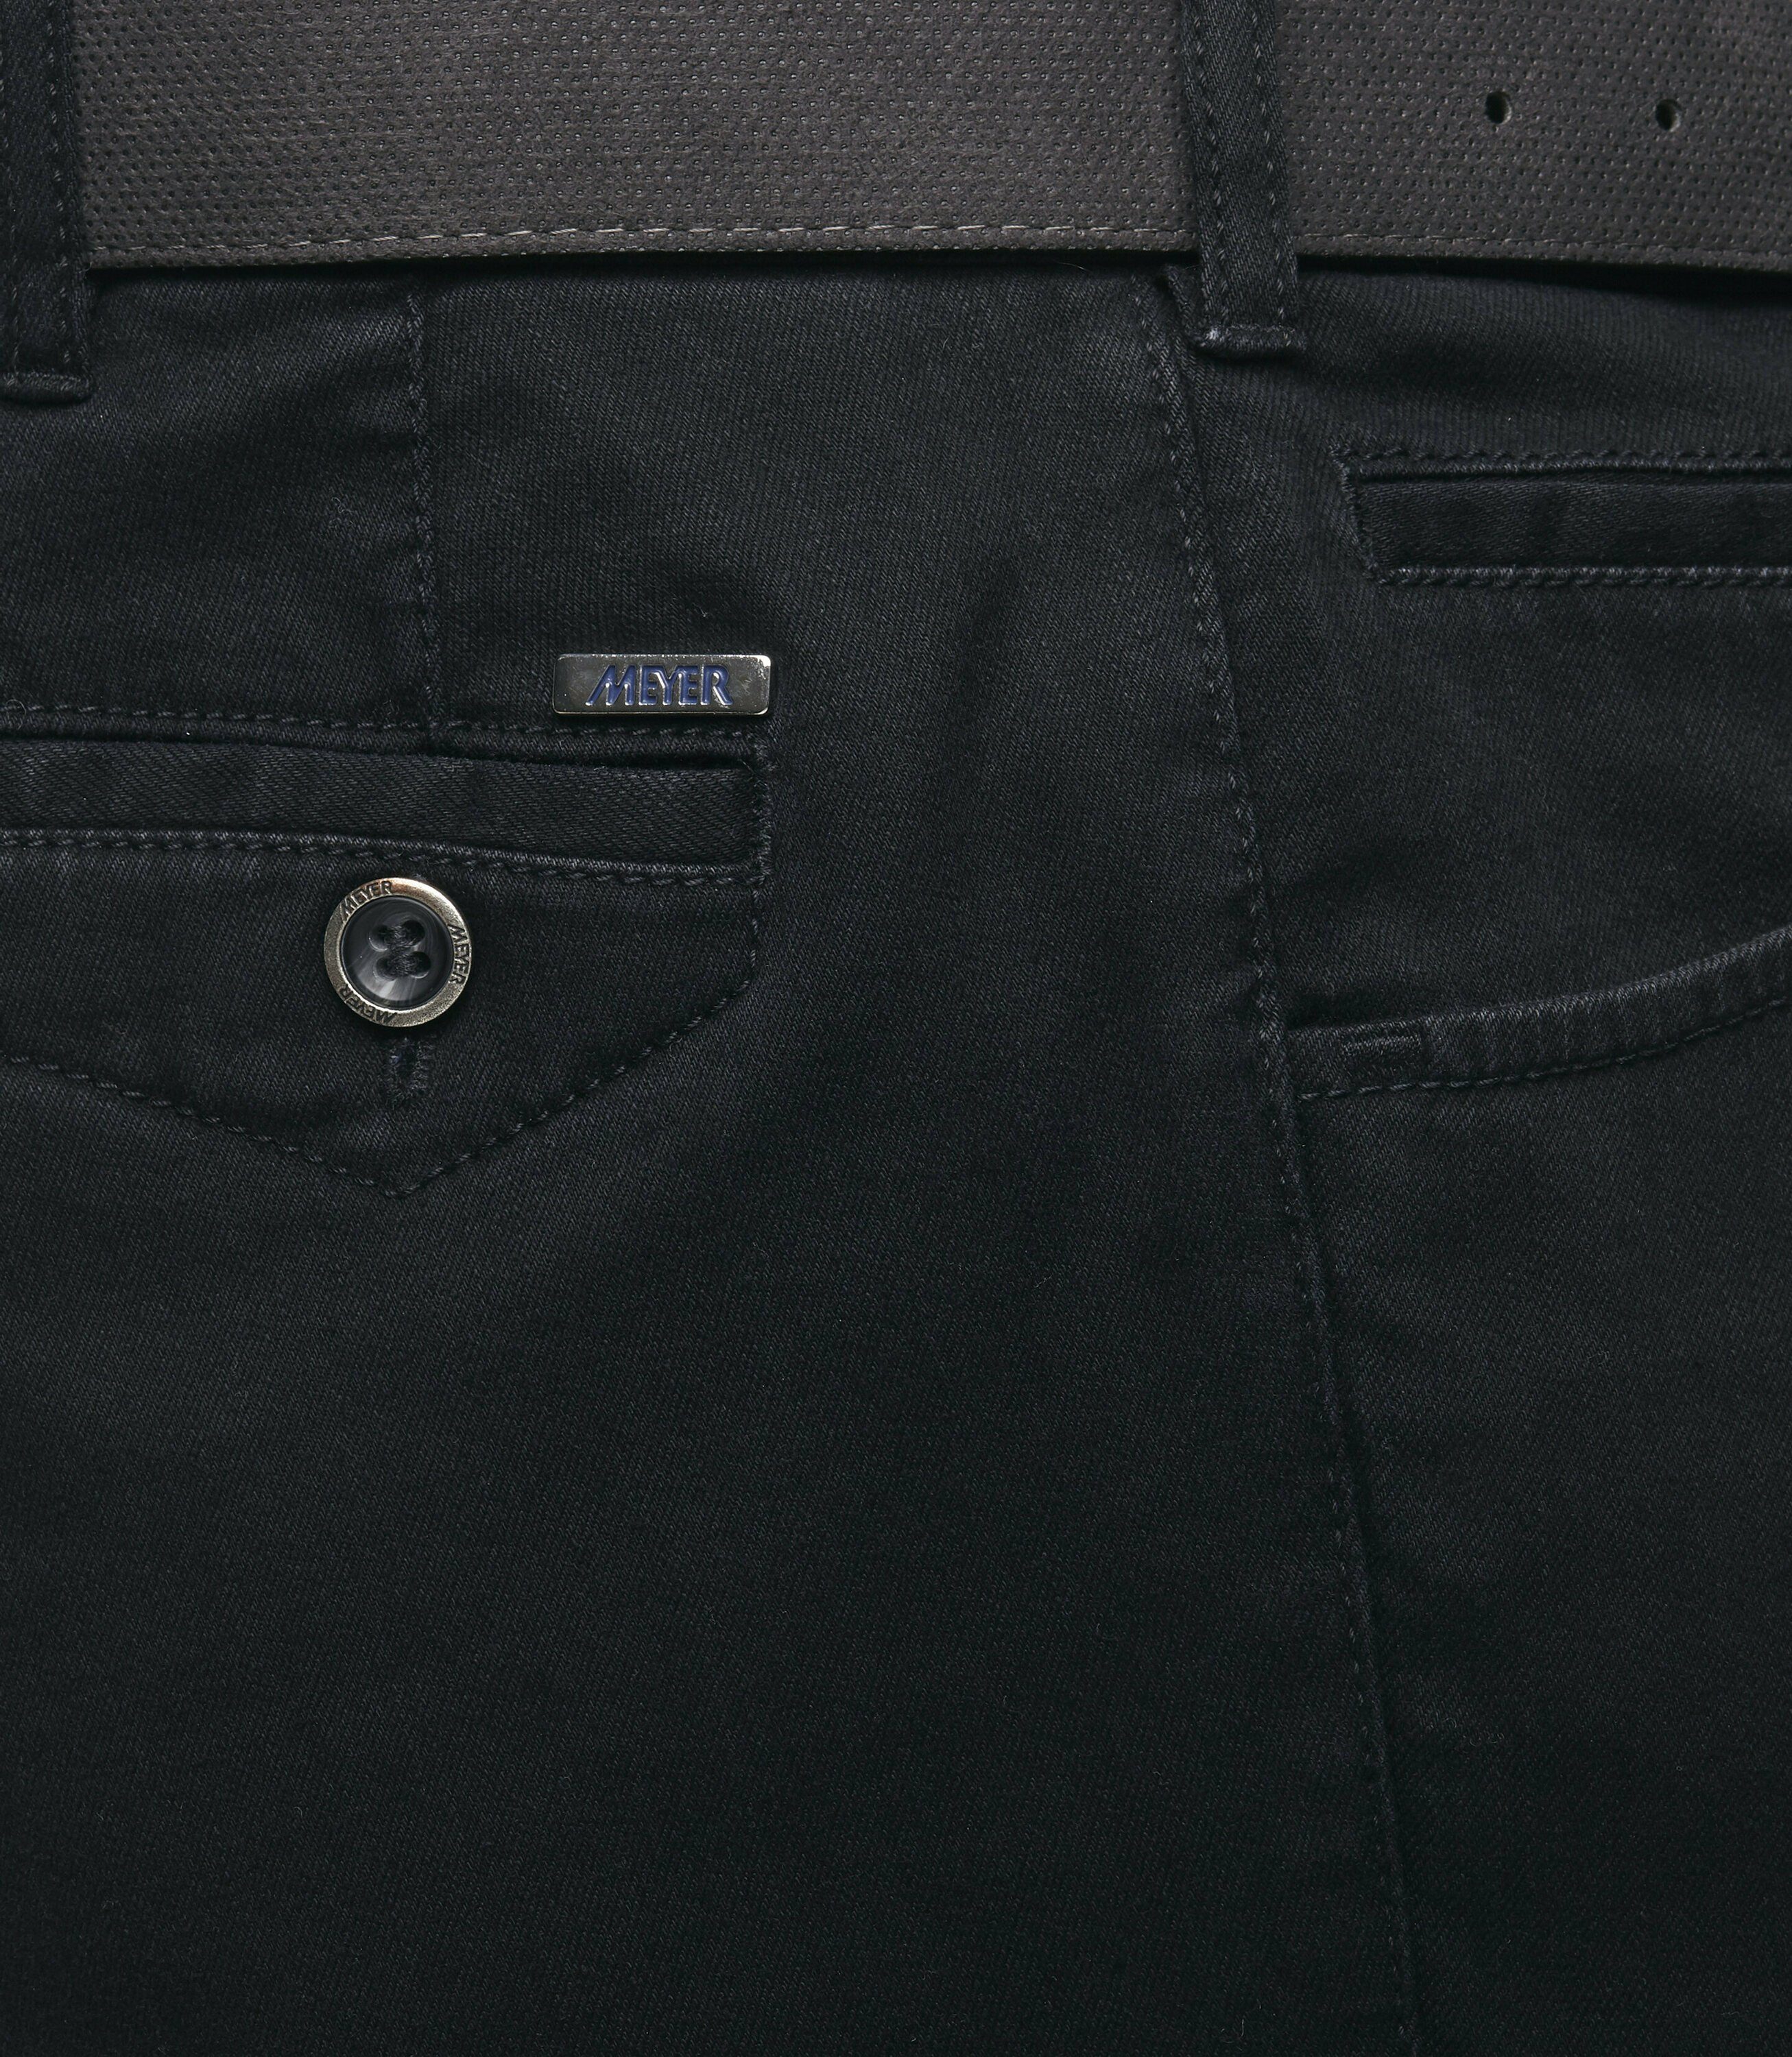 MEYER Stretch-Dehnbund Chino Dublin schwarz Slim-fit-Jeans mit